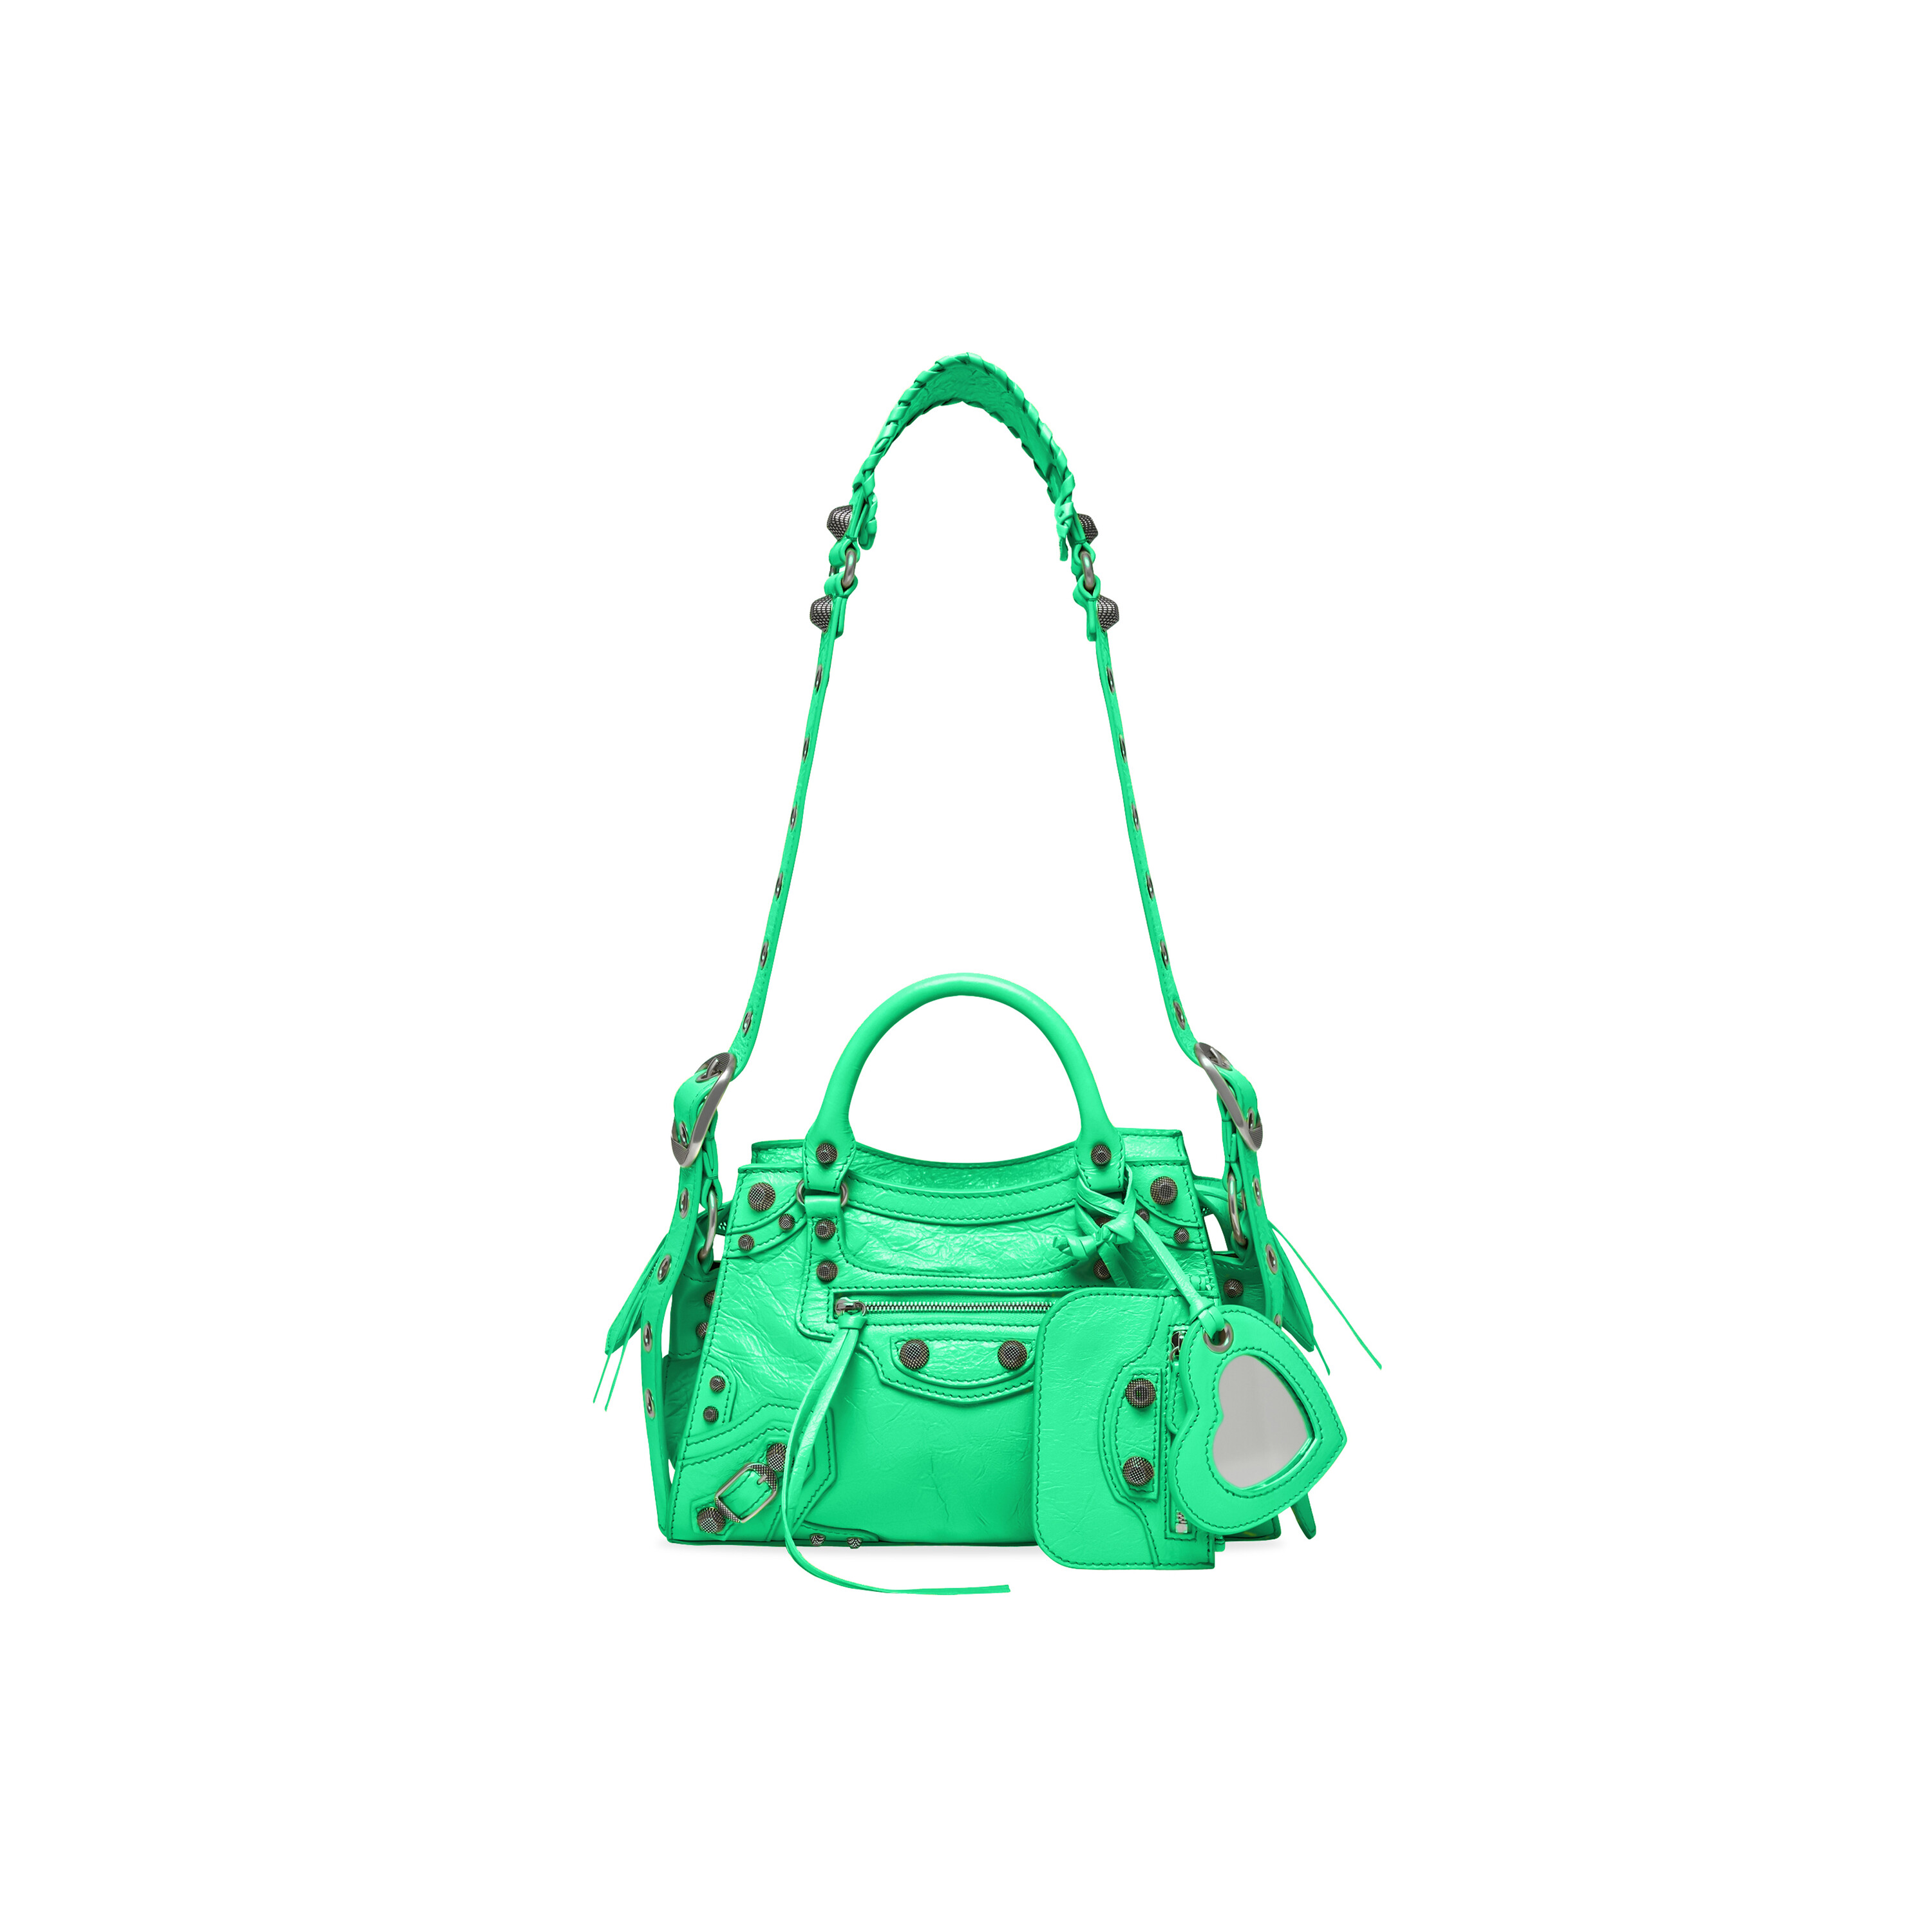 Neo Cagole City Small Leather Tote Bag in Multicoloured - Balenciaga